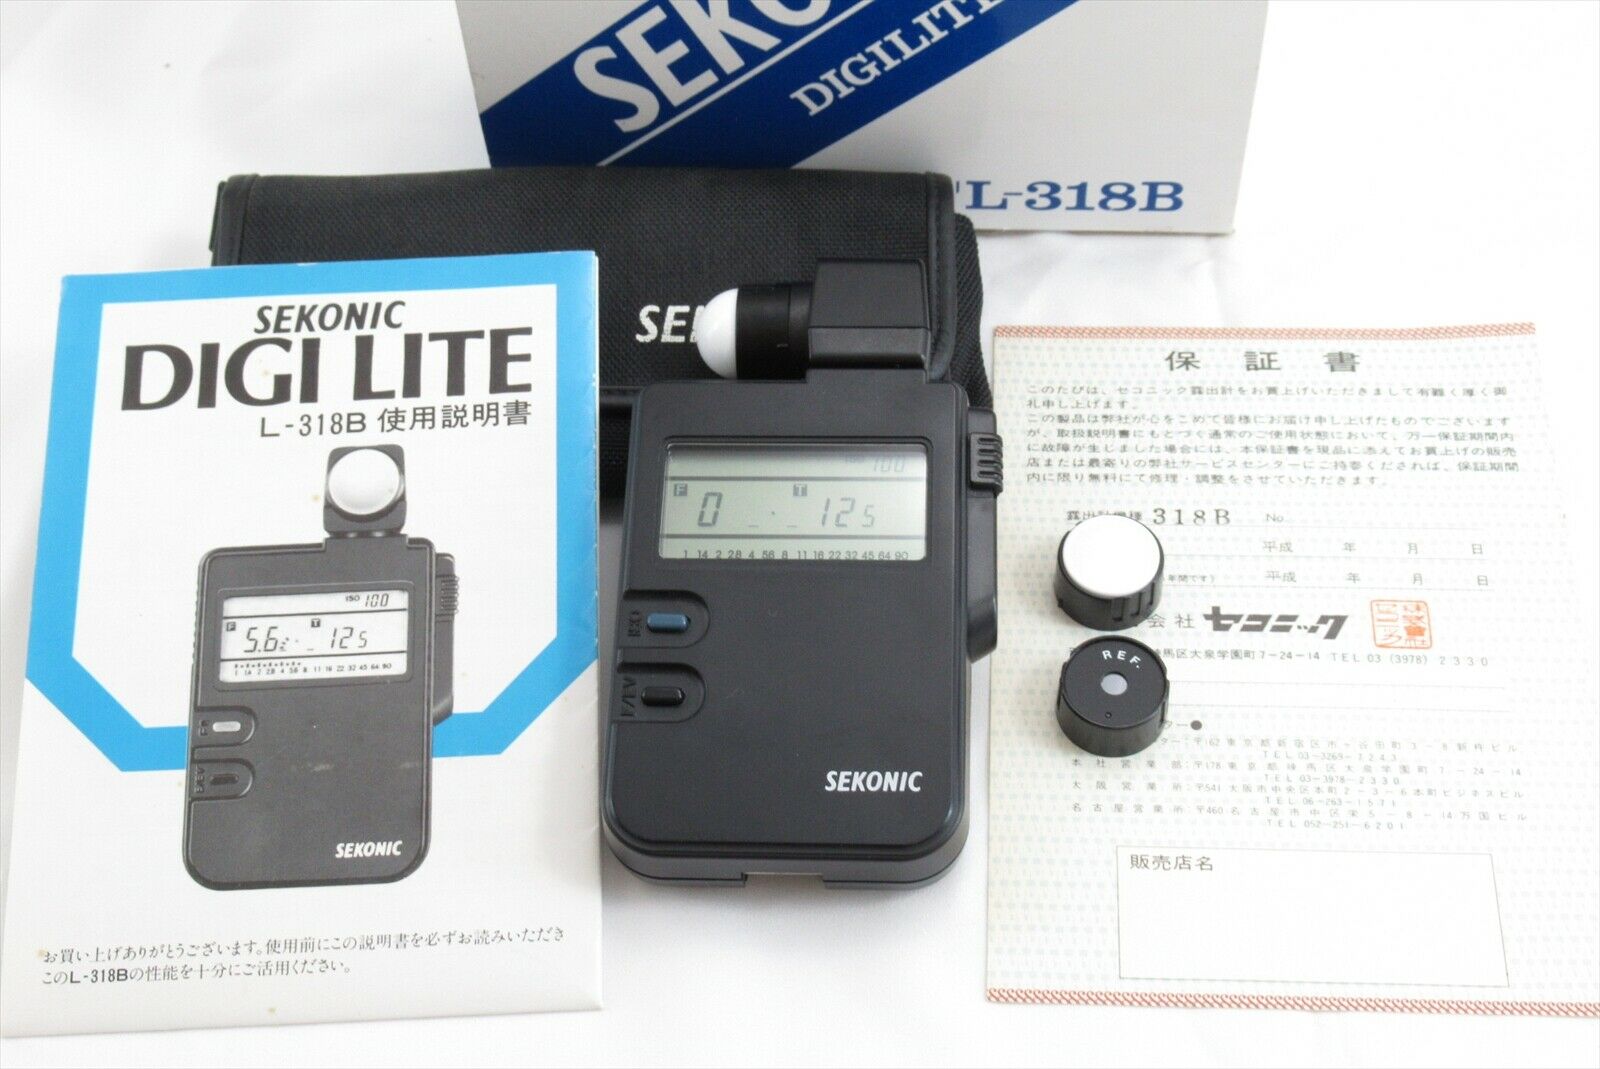 【exc+++++】sekonic Digi Mate L-318b Digital Light Meter W/ Case Manual Box #3572